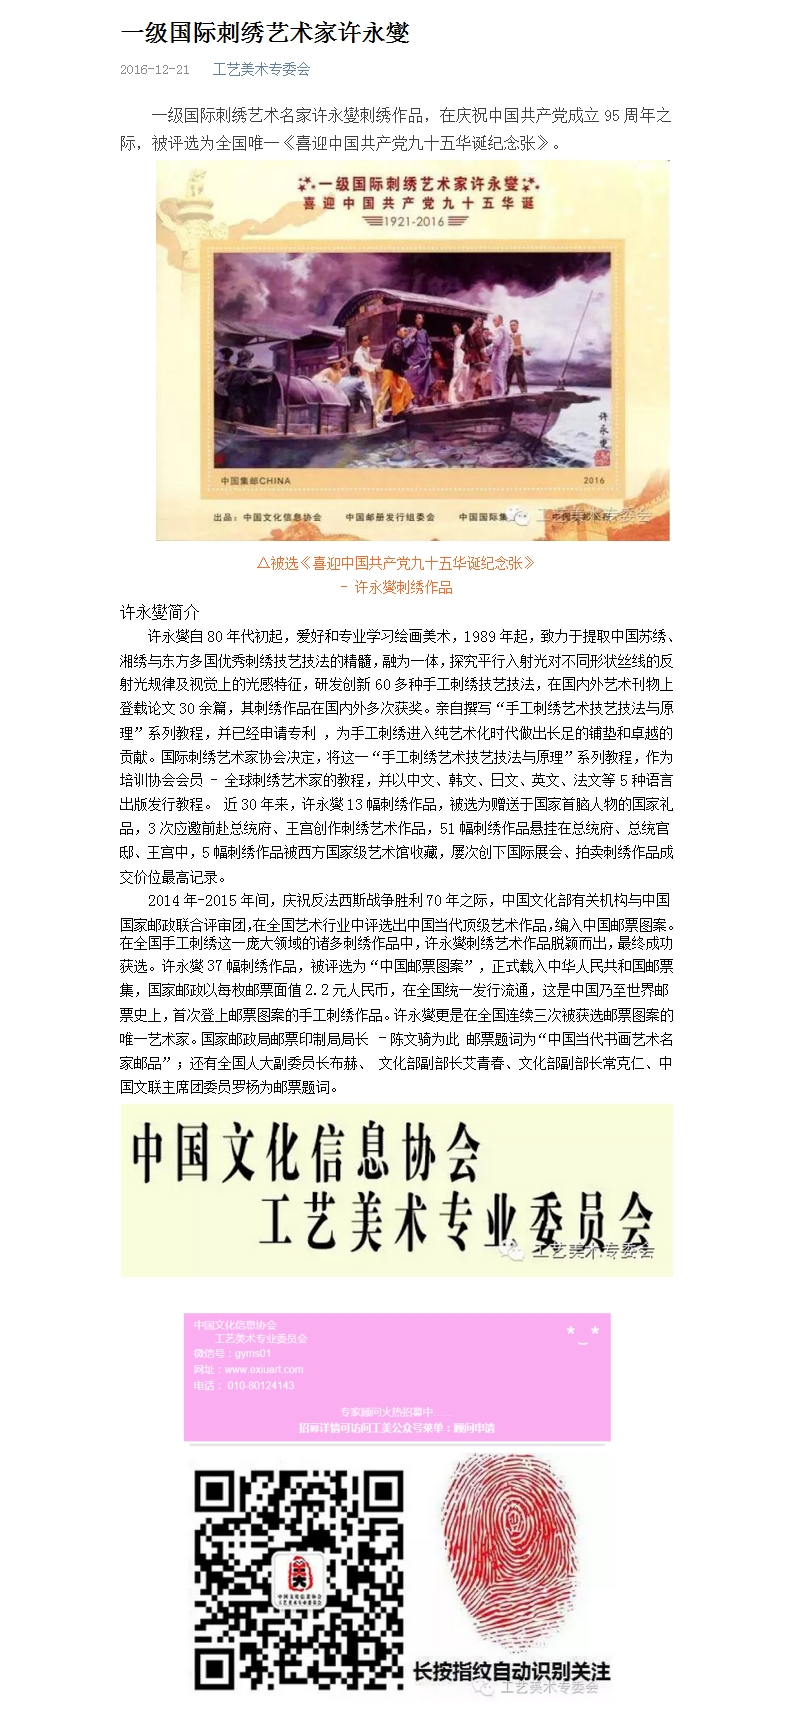 中国文化信息新闻报道：一级国际刺绣艺术家许永燮的刺绣作品被评选为“中国共产党成立95周年纪念张”.......jpg